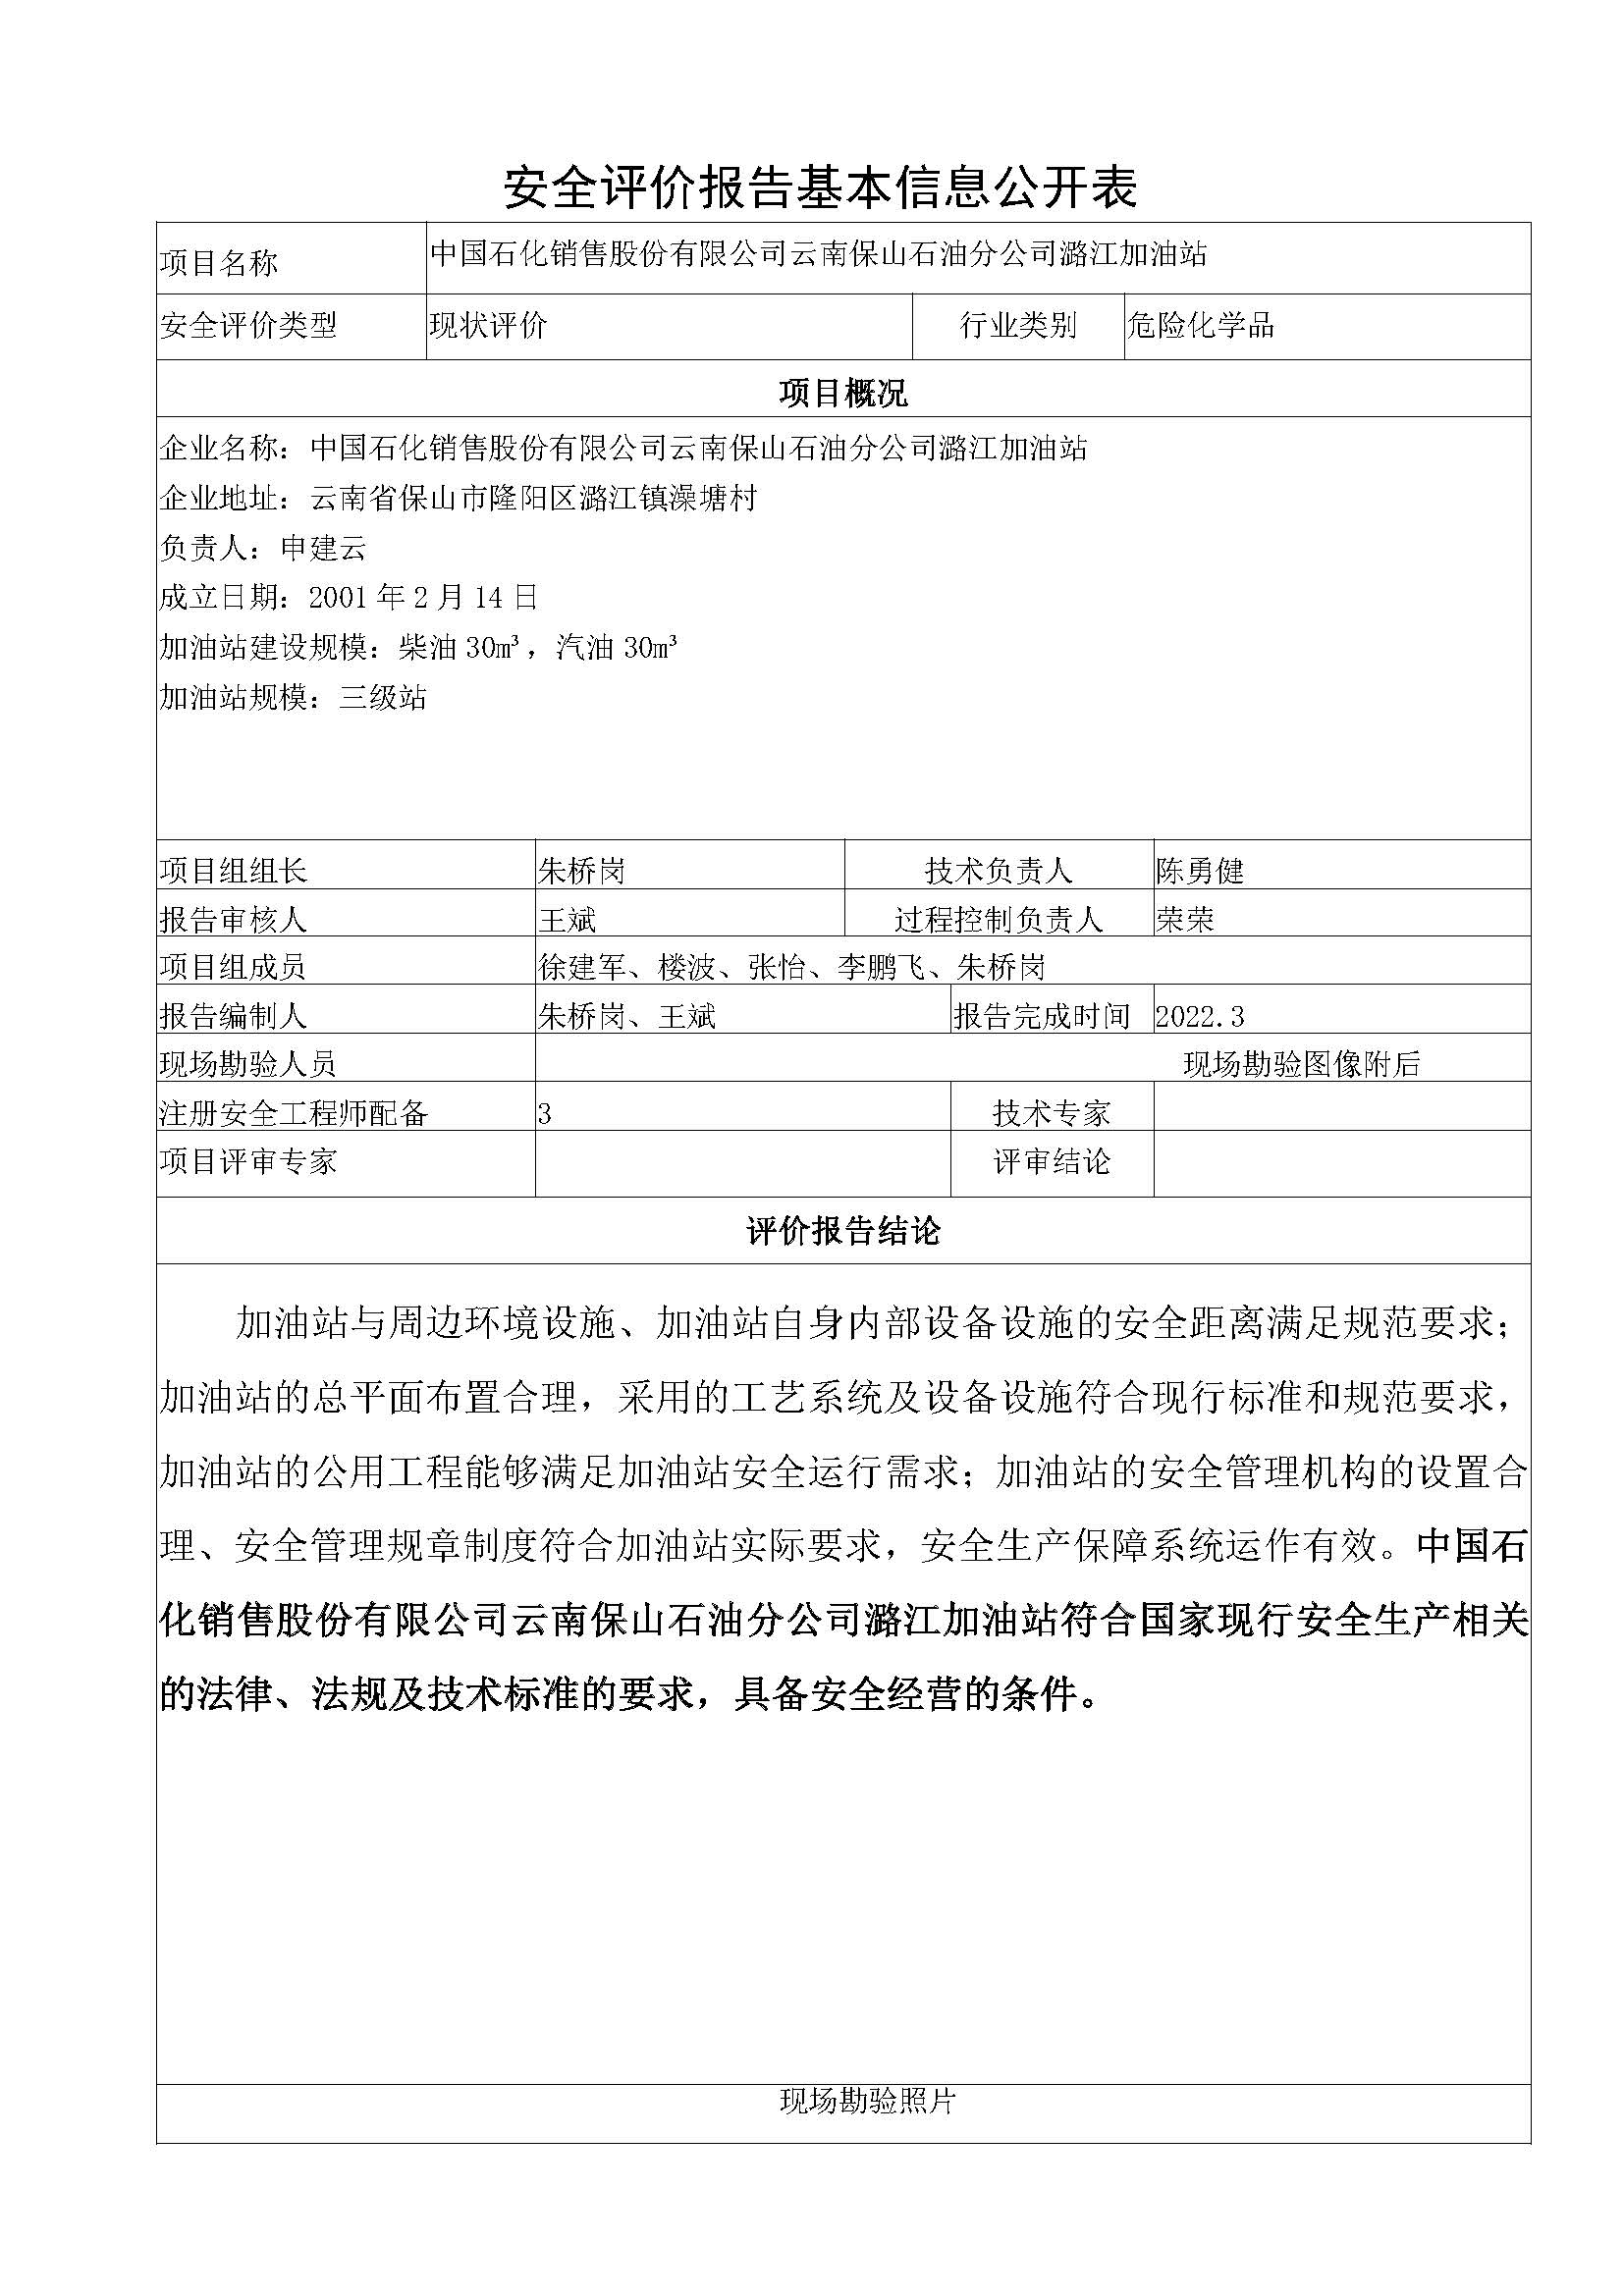 潞江加油站安全评价报告基本信息公开表